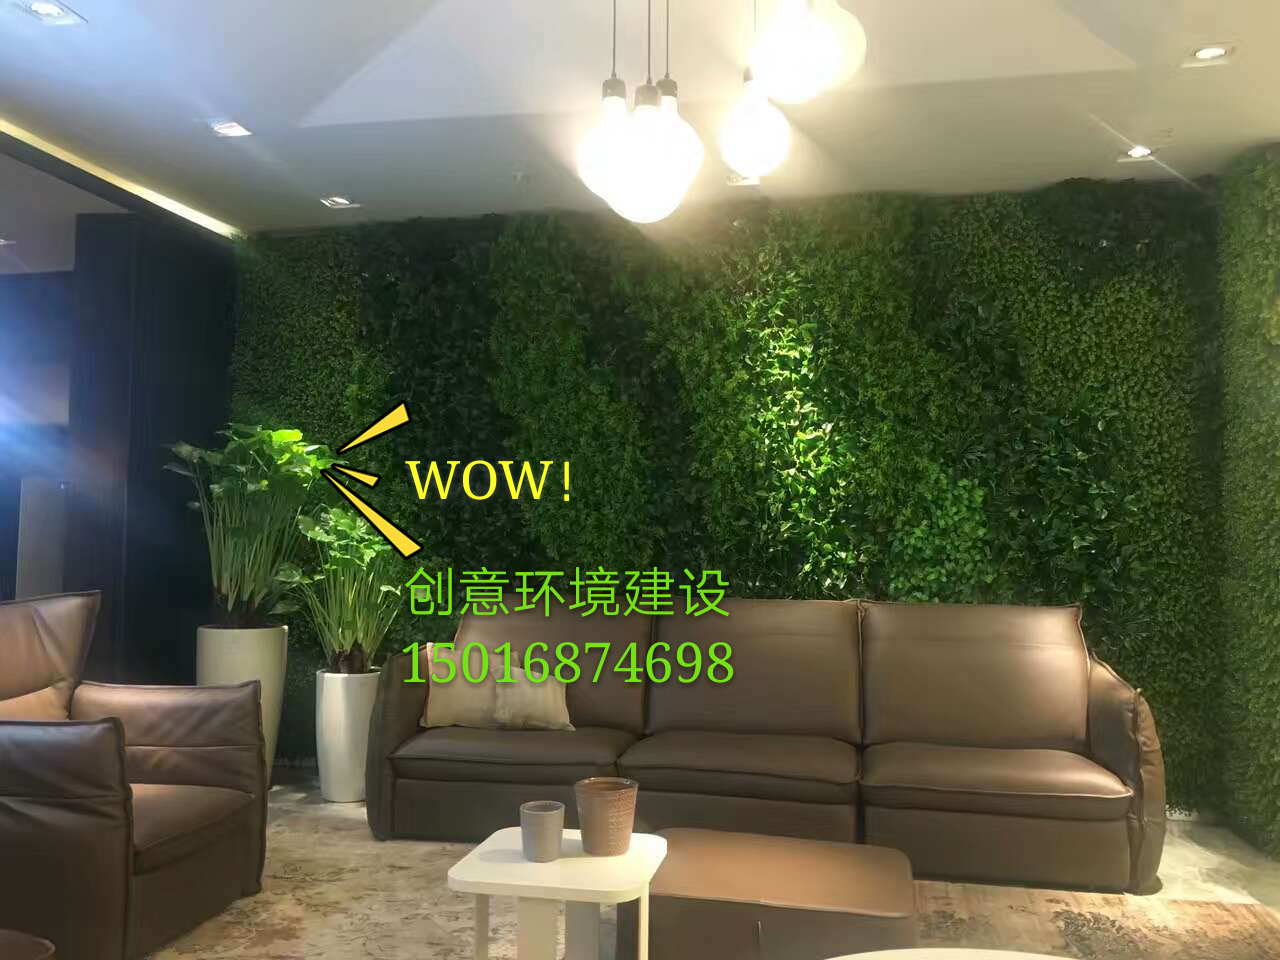 专业从事仿真植物墙 广东仿真植物墙 广东仿真植物墙哪家好 室内植物墙装饰